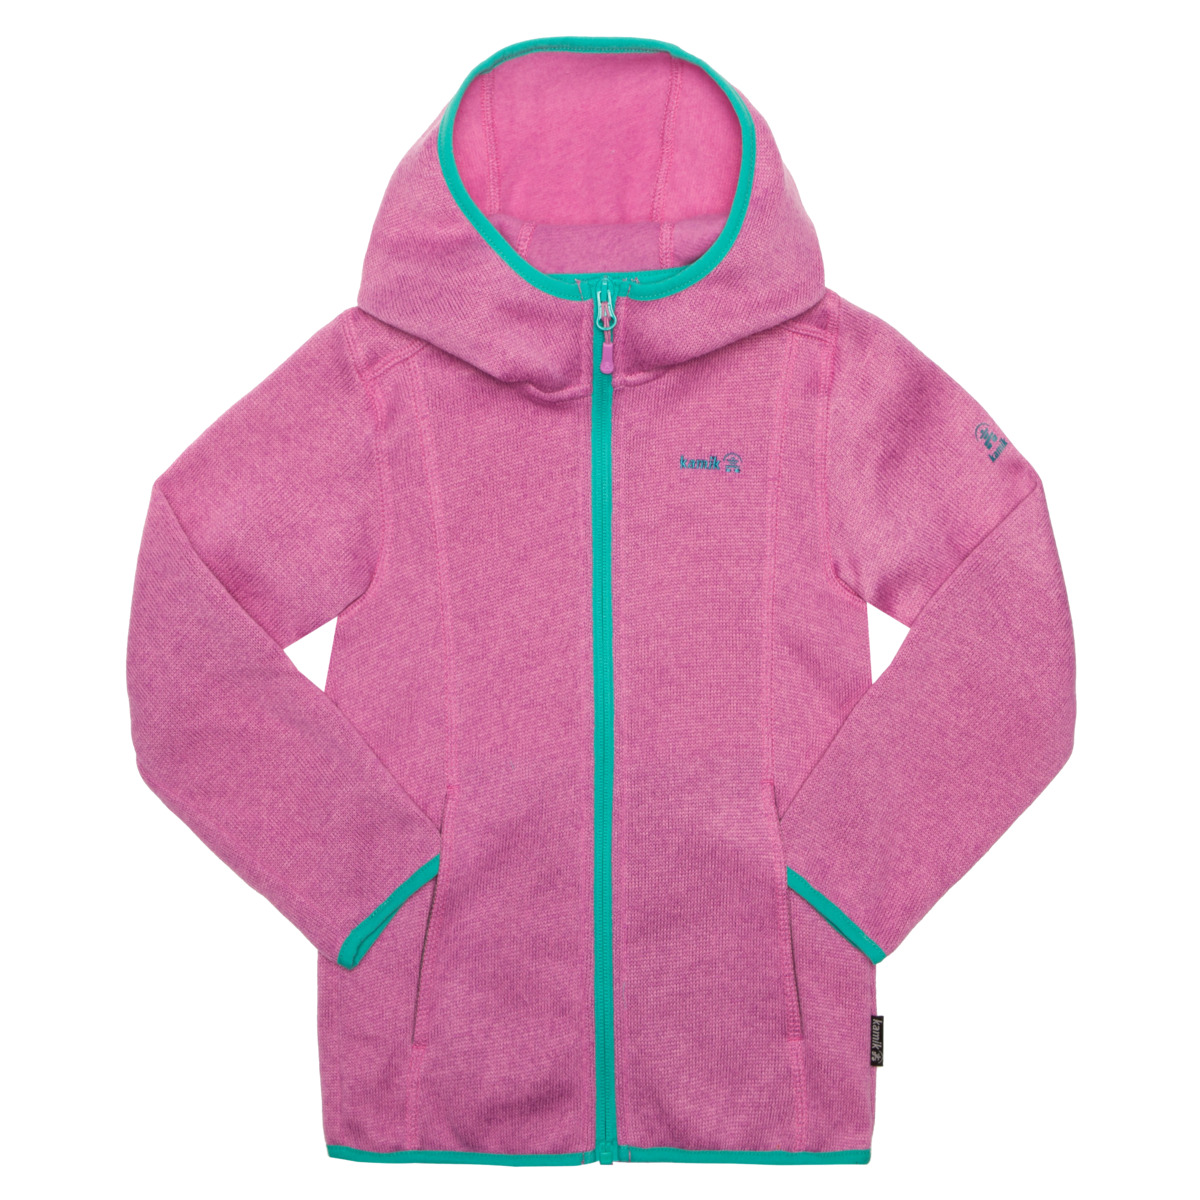 Флисовая куртка Kamik DAKOTA, розовый флисовая куртка auroraa bekleidung kamik цвет grape saffron raisin v46926 gsf